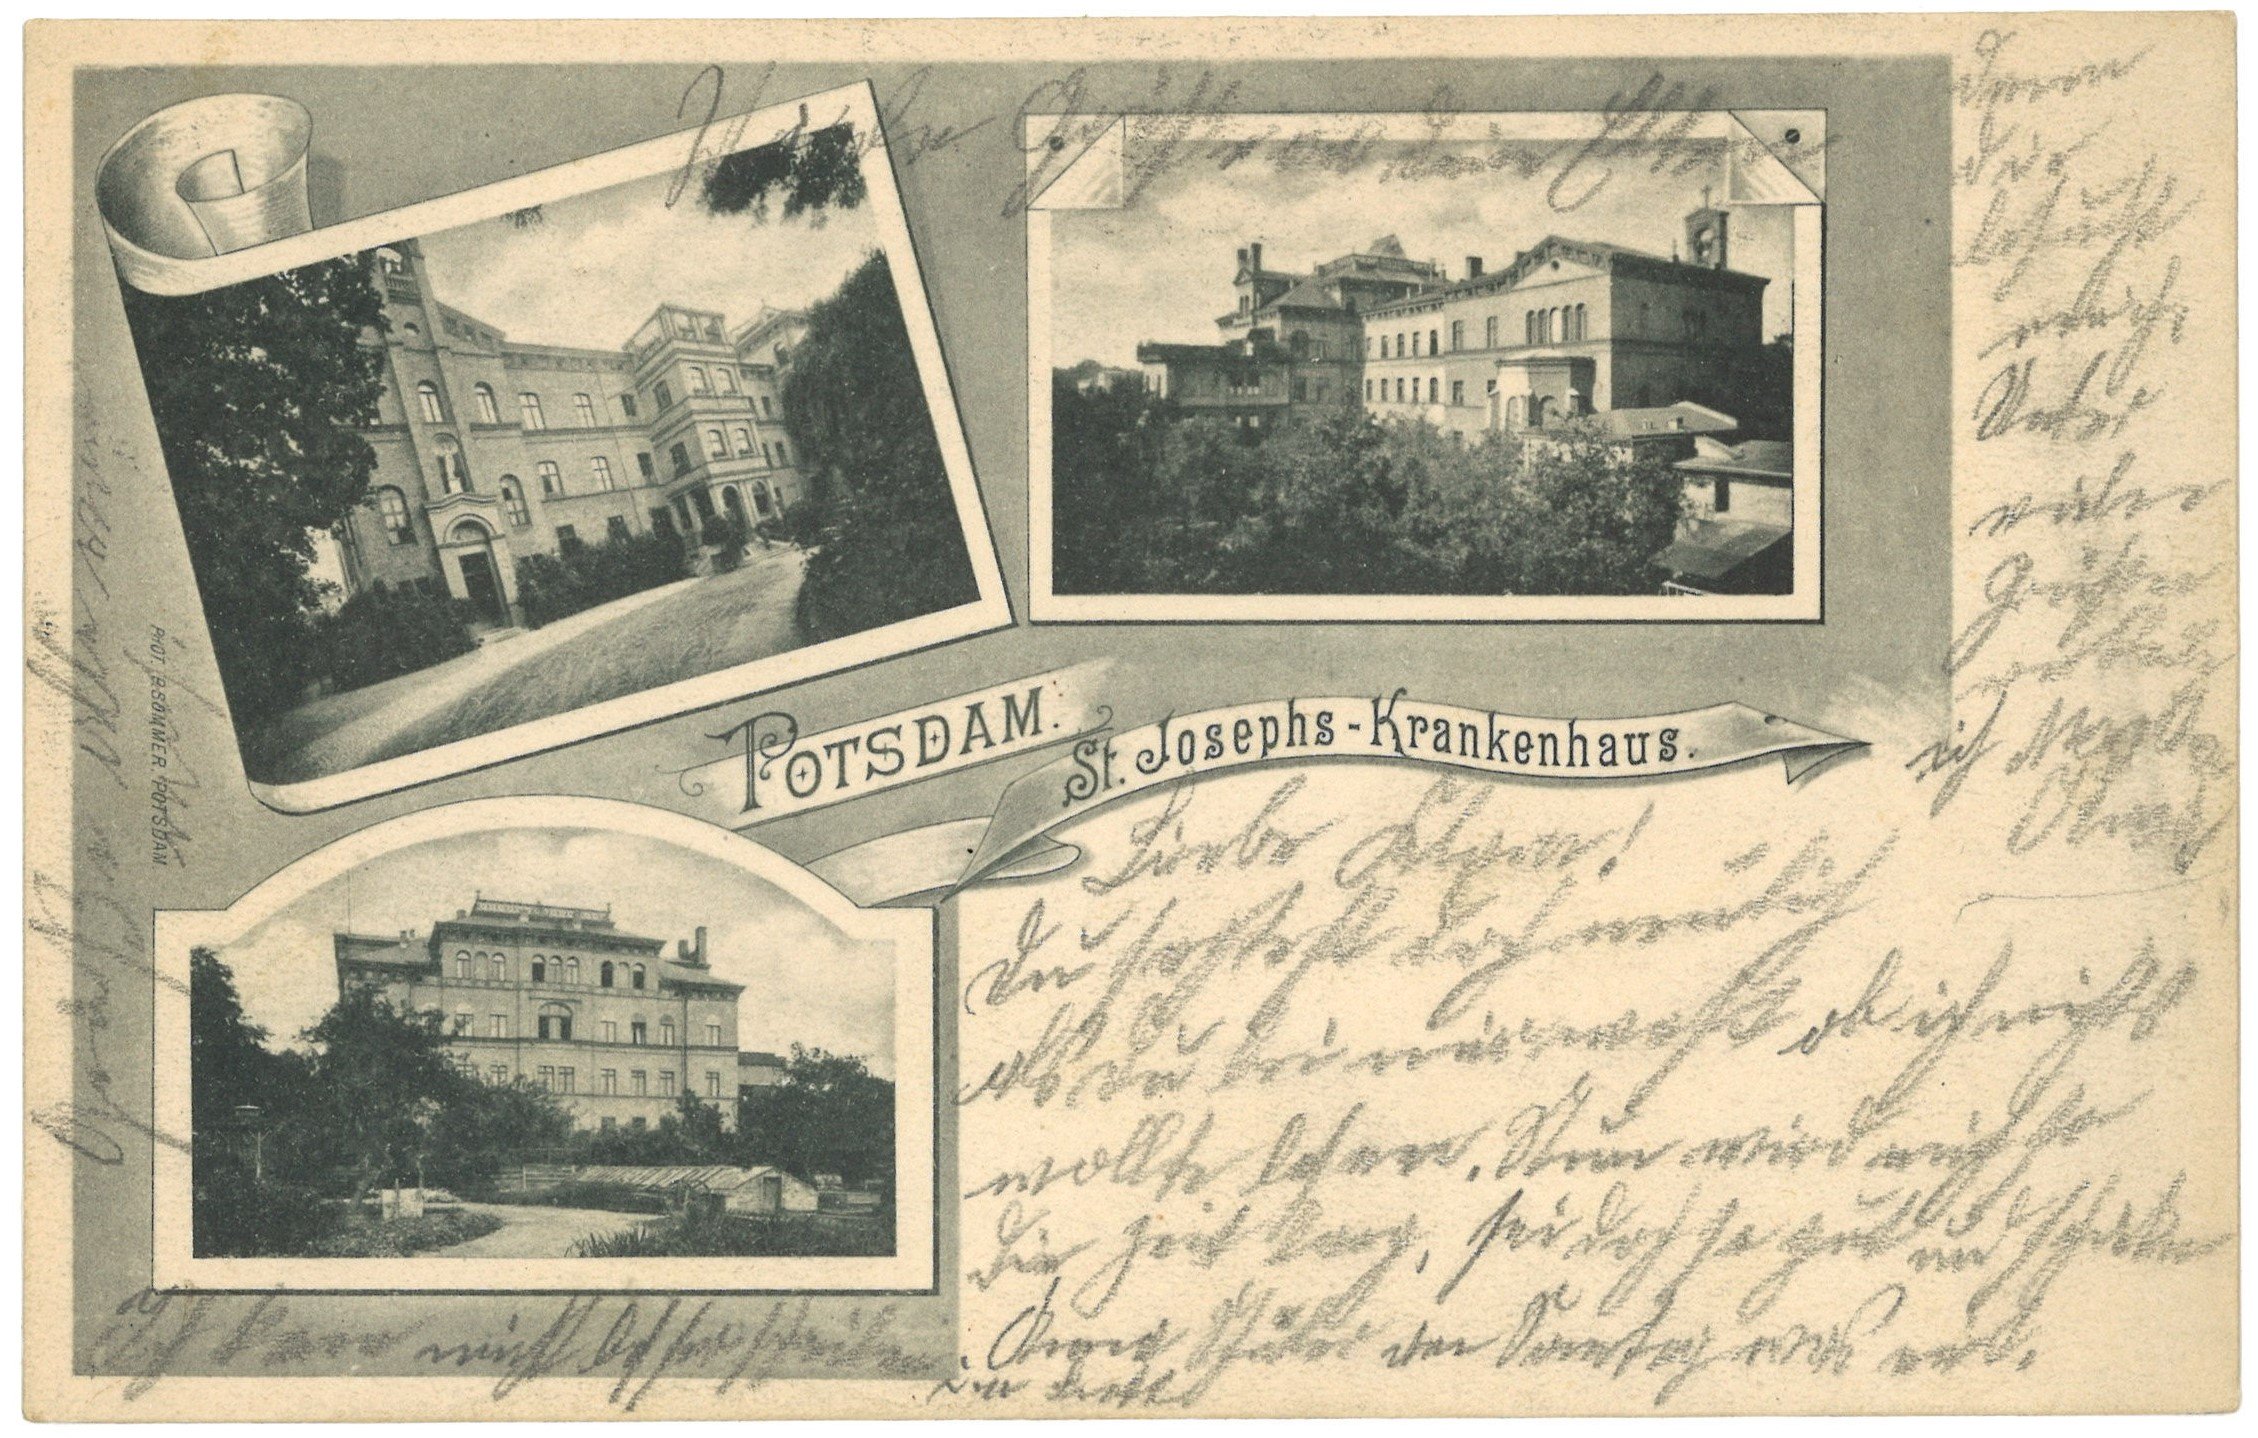 Potsdam: St. Josephs-Krankenhaus (drei Ansichten) (Landesgeschichtliche Vereinigung für die Mark Brandenburg e.V. CC BY)